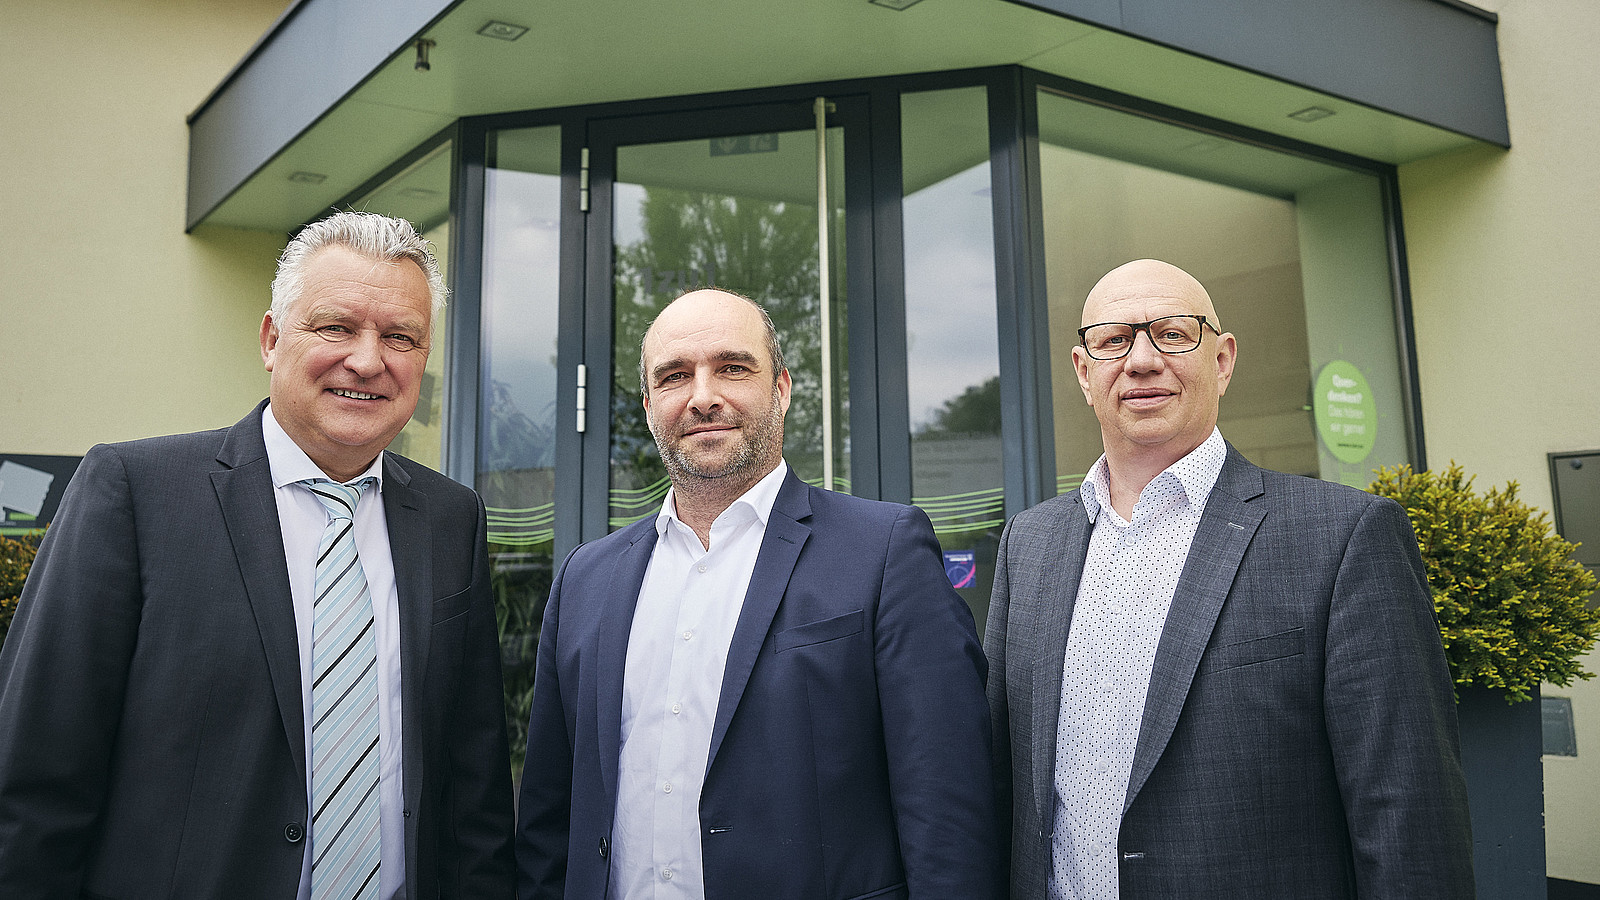 High-Tech-Unternehmen 1zu1 stellt mit der Übergabe der Geschäftsführung durch die beiden Gründer Wolfgang Humml (links) und Hannes Hämmerle (rechts) an den langjährigen Vertriebsleiter Thomas Kohler (Mitte) die Weichen für die Zukunft.